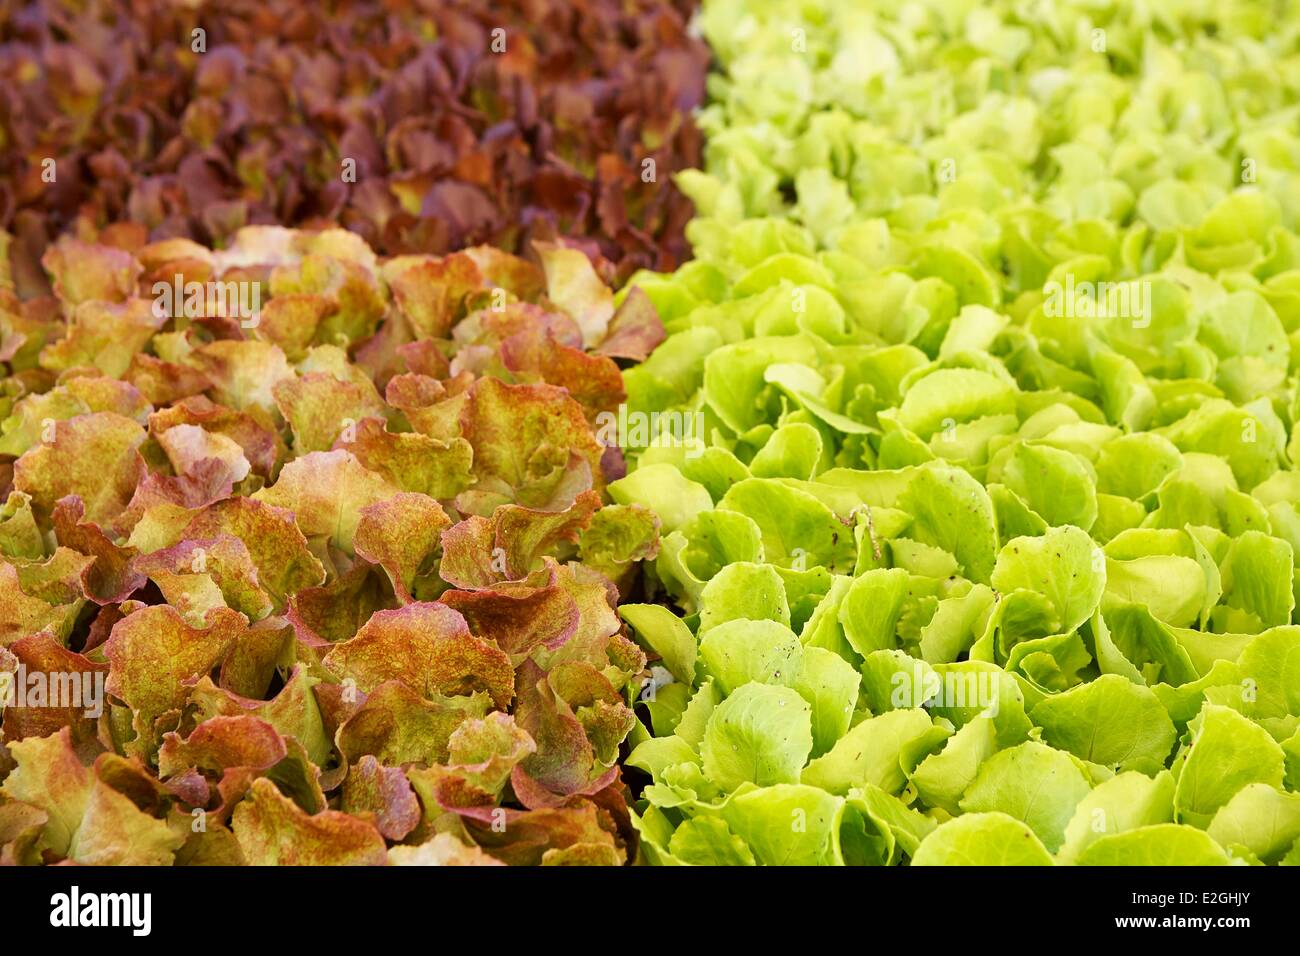 Le district de Faro Portugal Algarve Loule salades for sale at market Banque D'Images